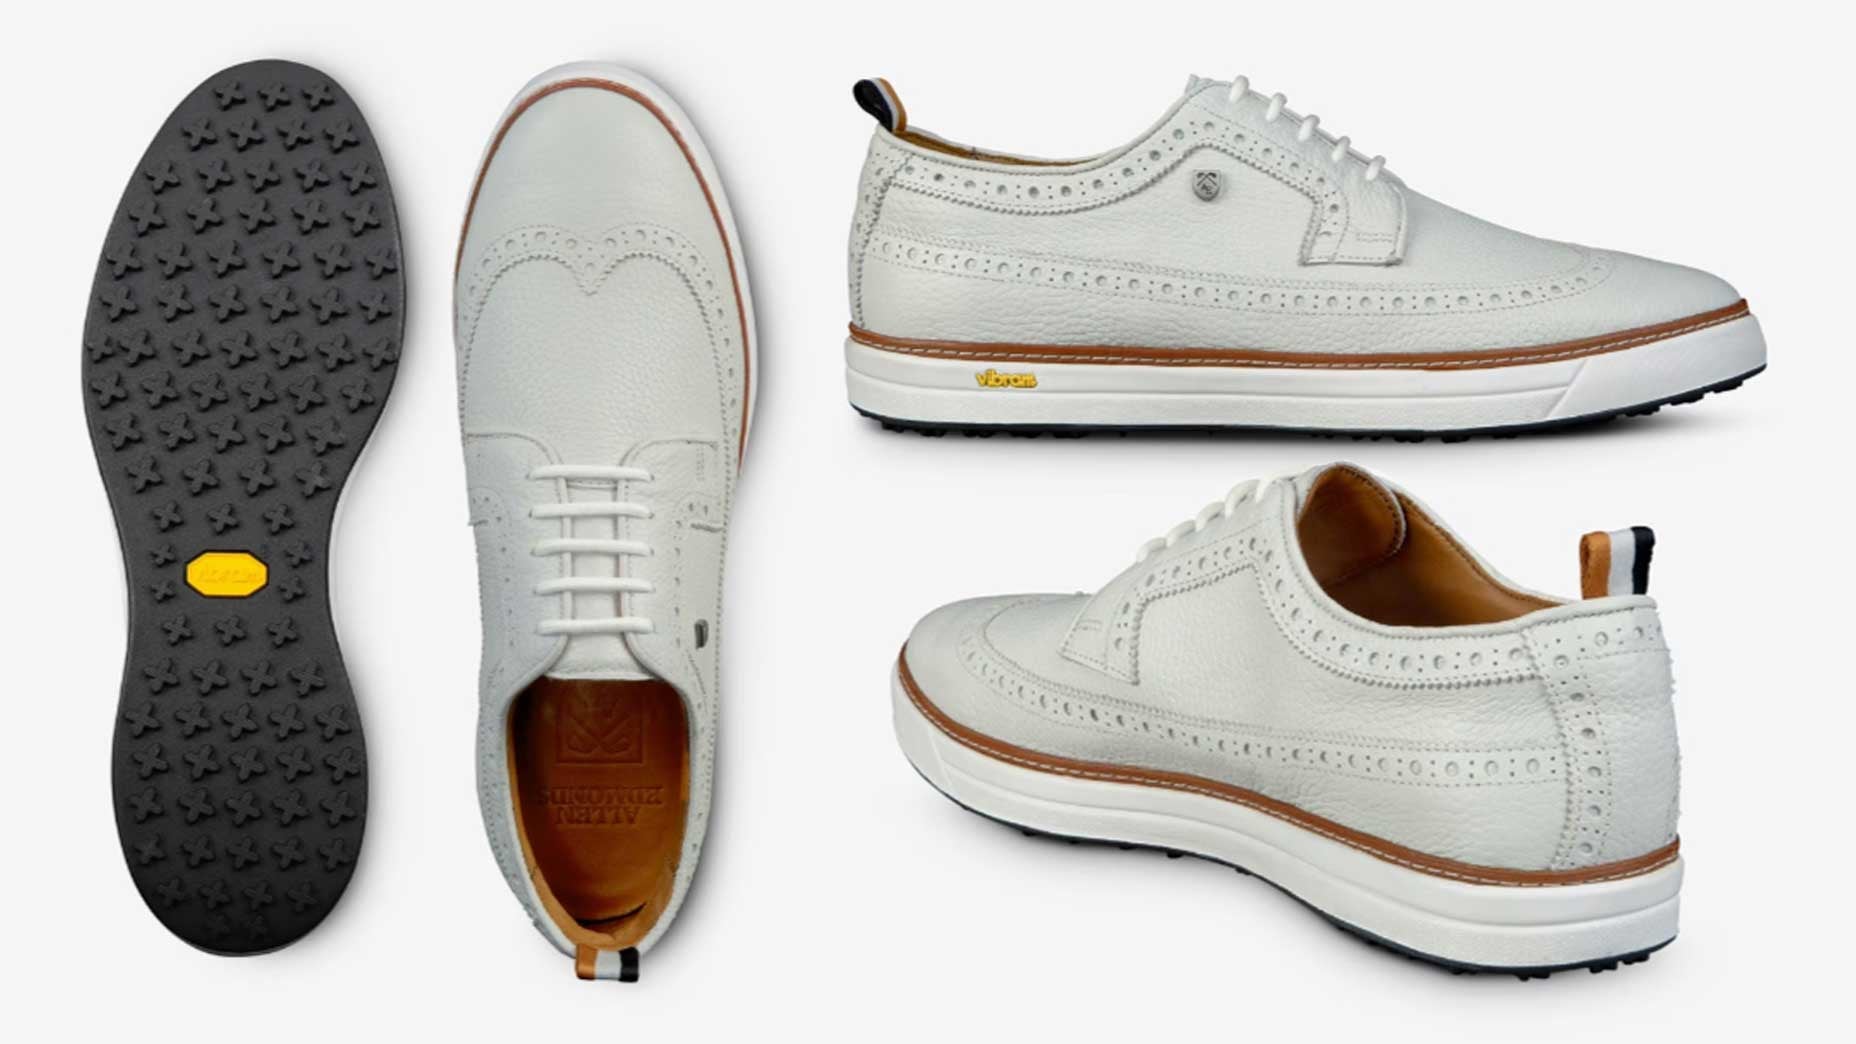 Allen Edmonds Golf shoe